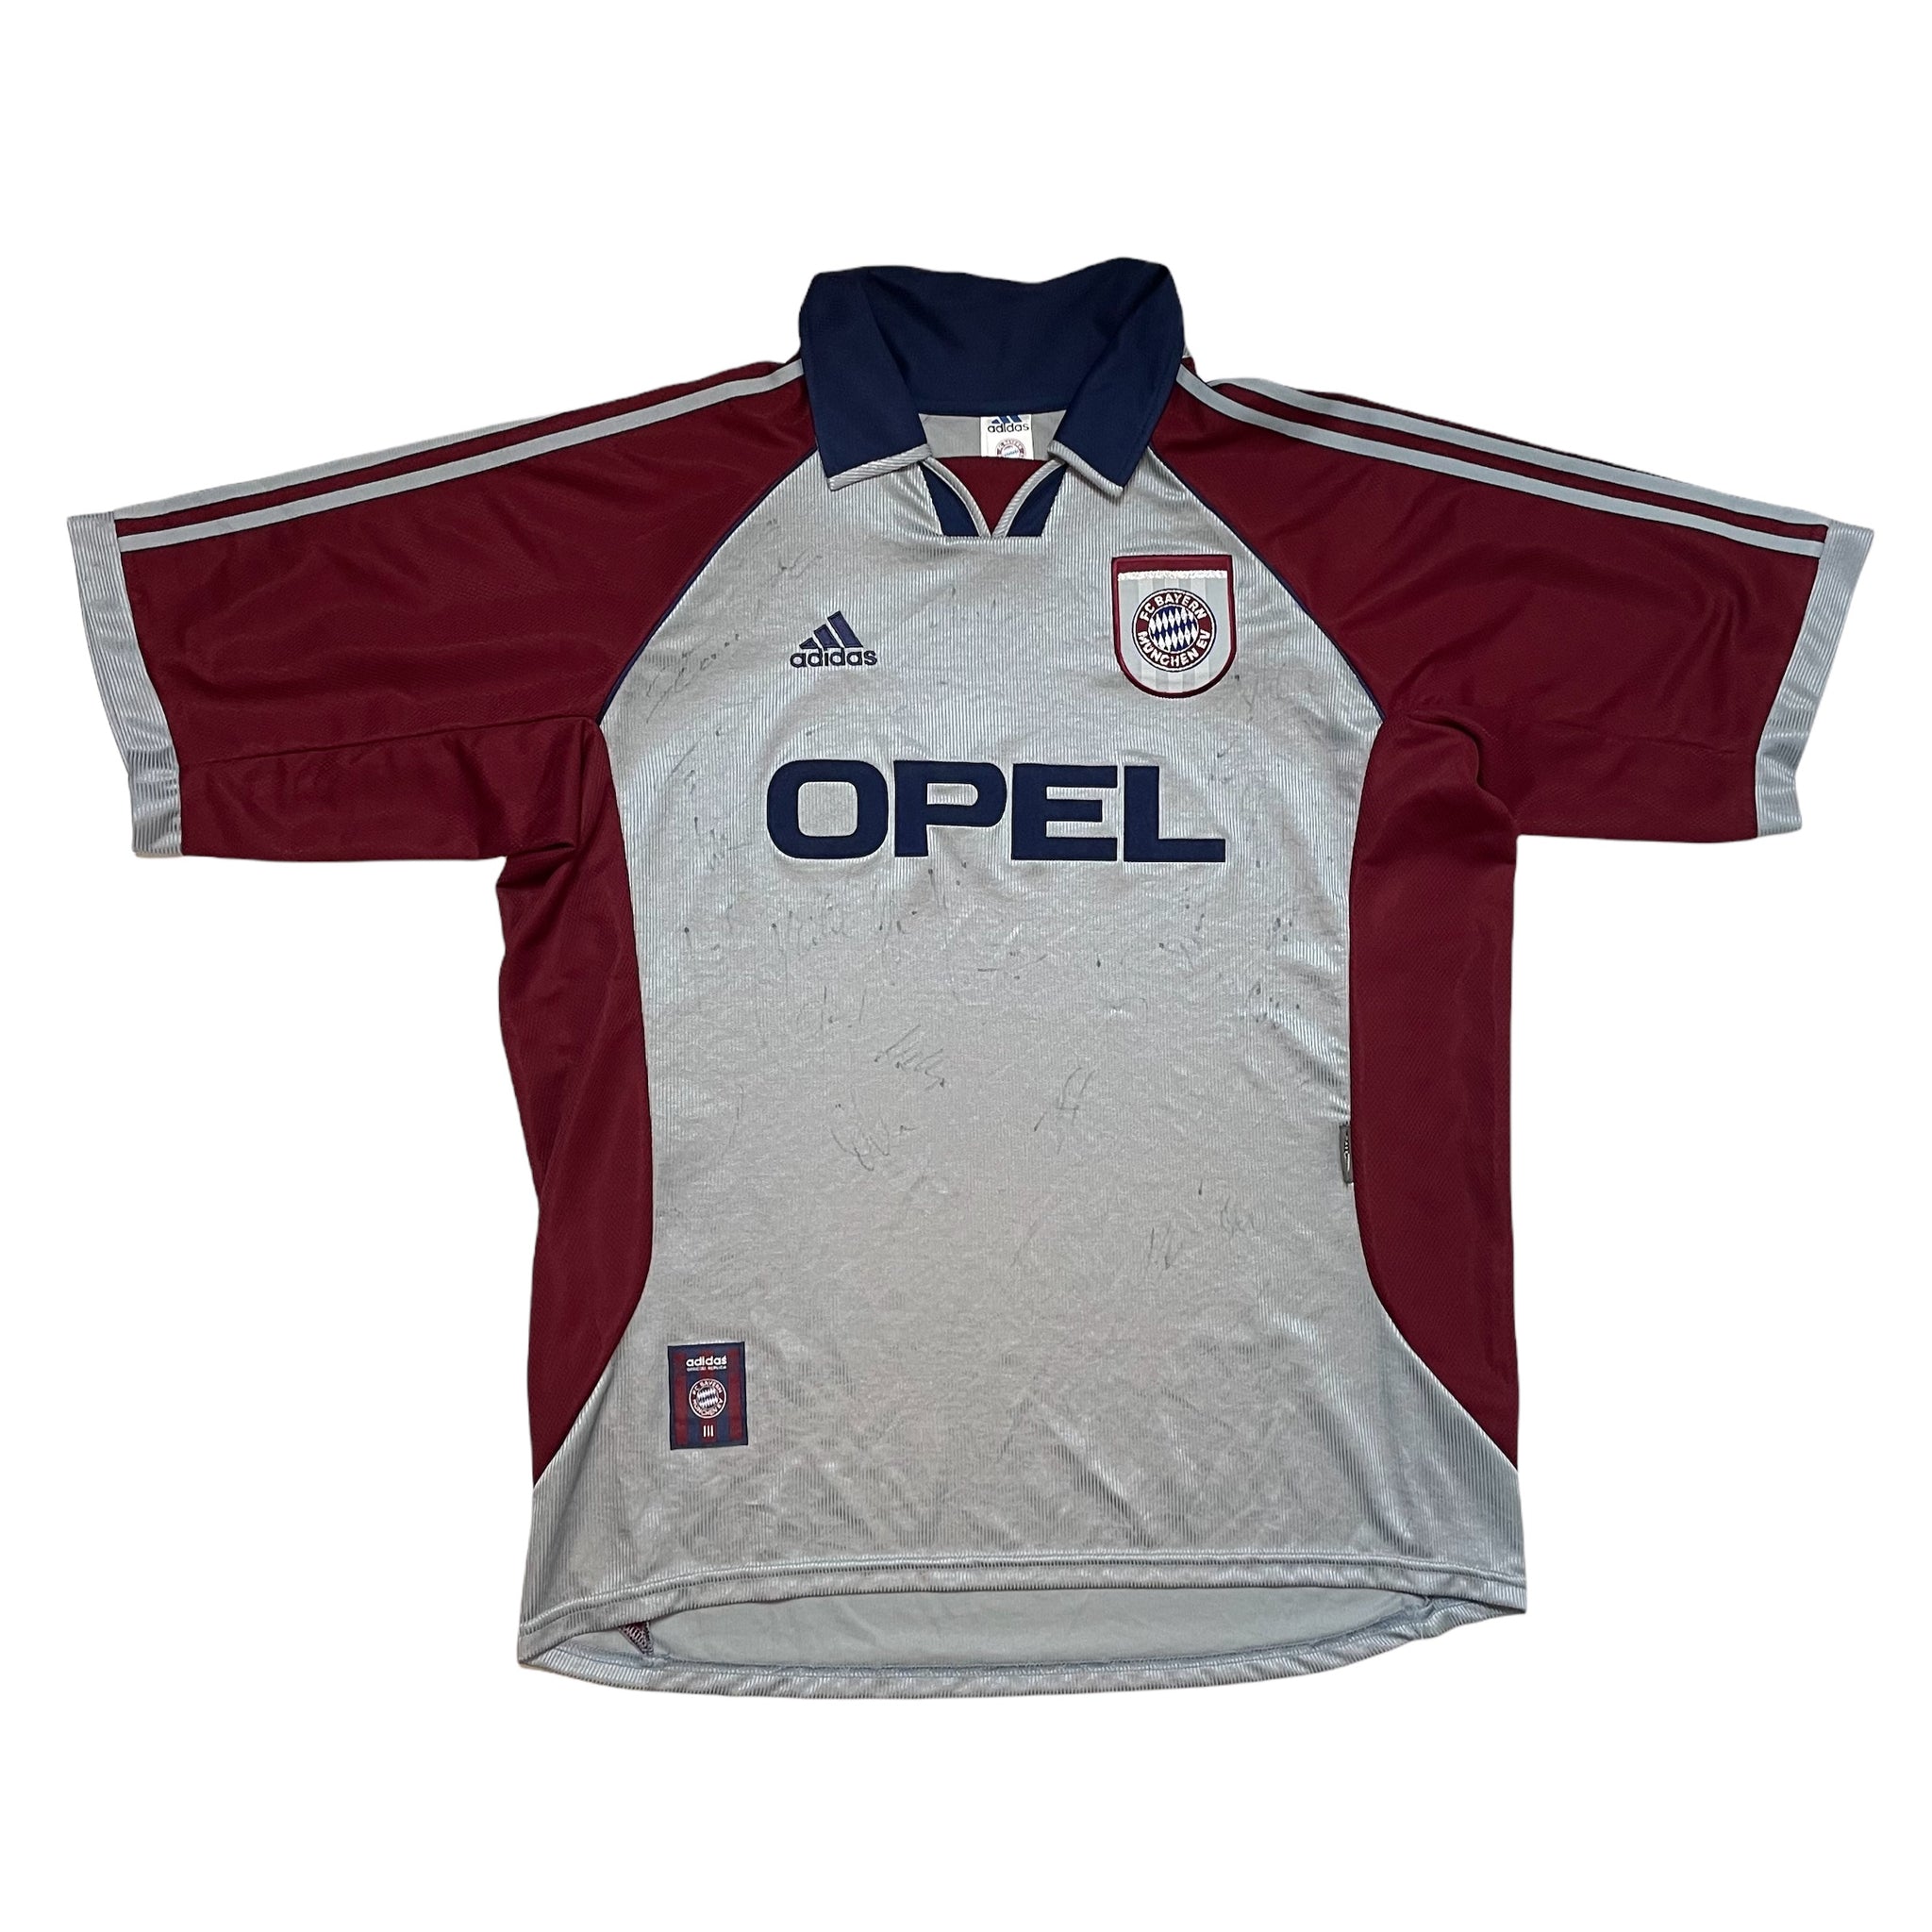 BAYERN MUNICH 1998/99 CHAMPIONS LEAGUE SIGNED FOOTBALL SHIRT (XL)